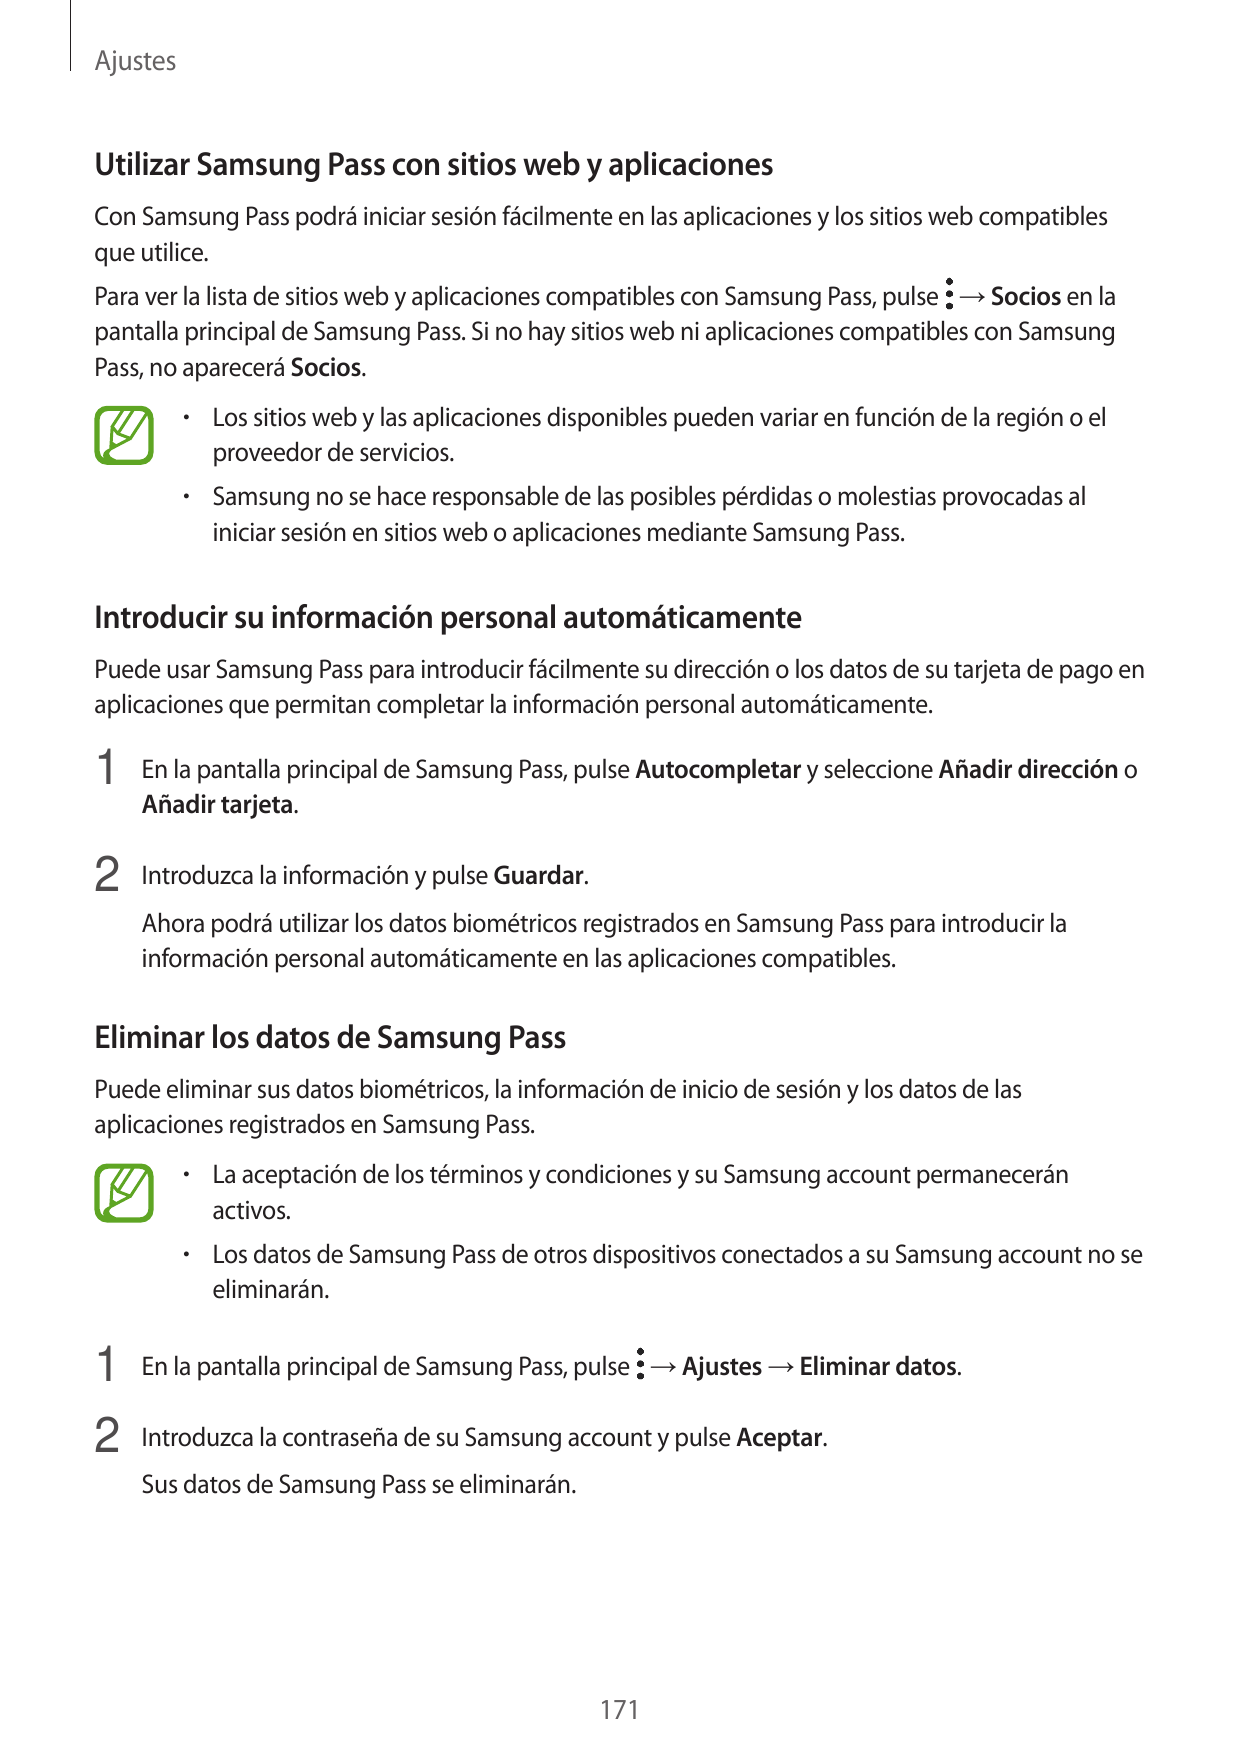 AjustesUtilizar Samsung Pass con sitios web y aplicacionesCon Samsung Pass podrá iniciar sesión fácilmente en las aplicaciones y